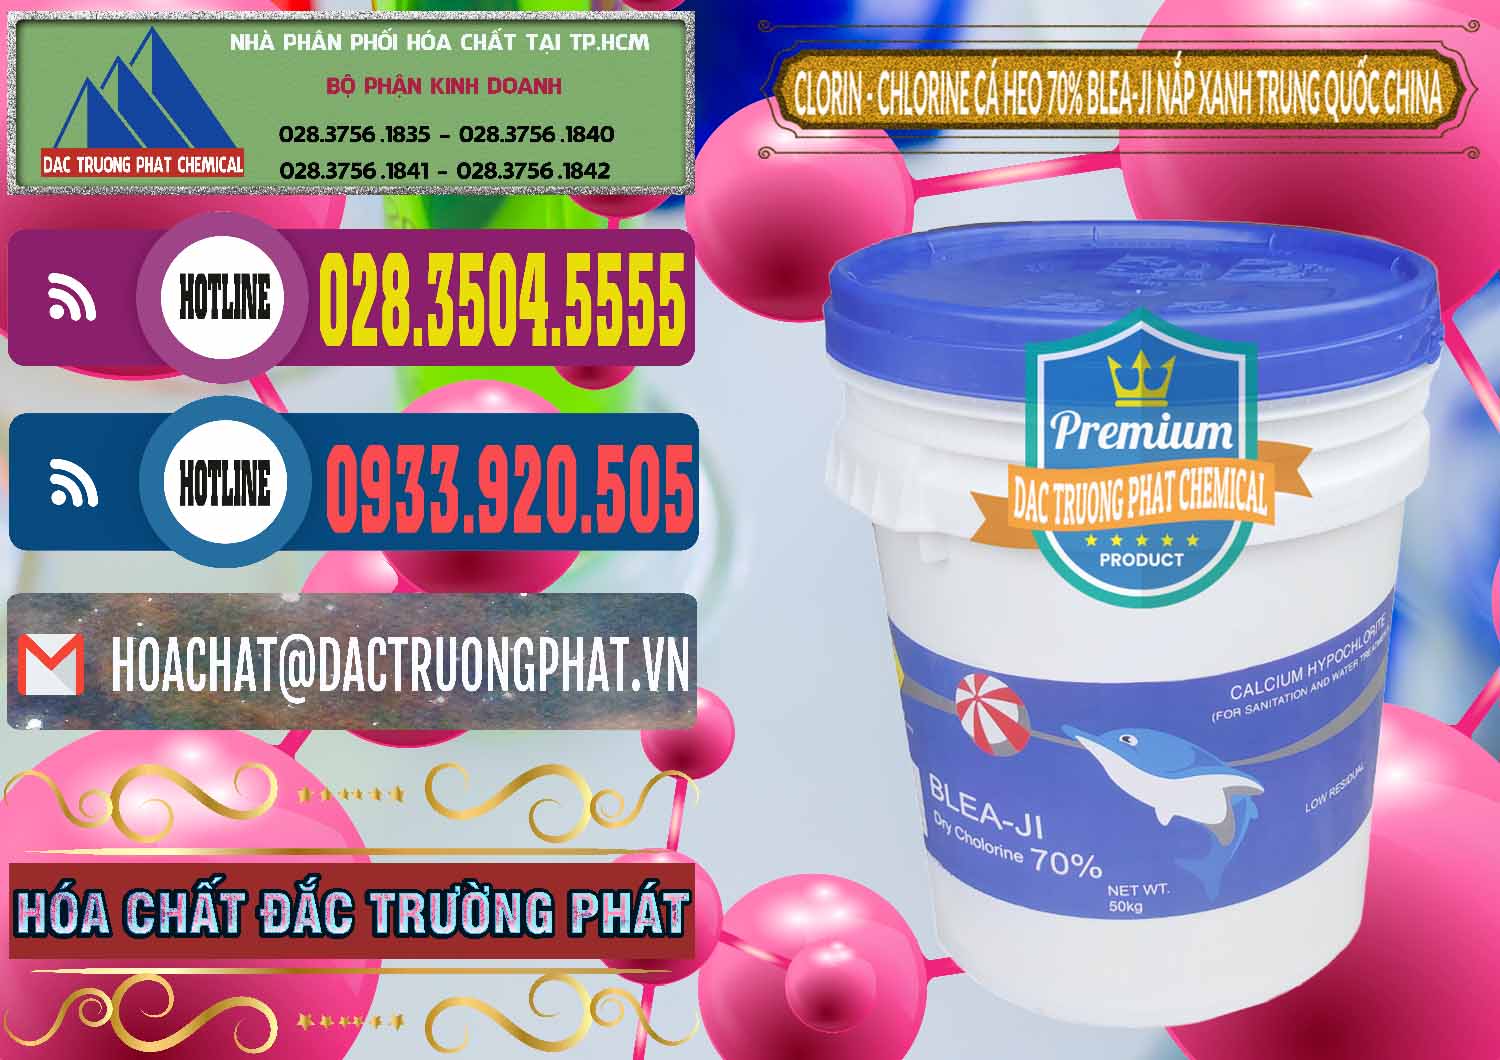 Cty bán & cung cấp Clorin - Chlorine Cá Heo 70% Cá Heo Blea-Ji Thùng Tròn Nắp Xanh Trung Quốc China - 0208 - Phân phối - cung cấp hóa chất tại TP.HCM - muabanhoachat.com.vn